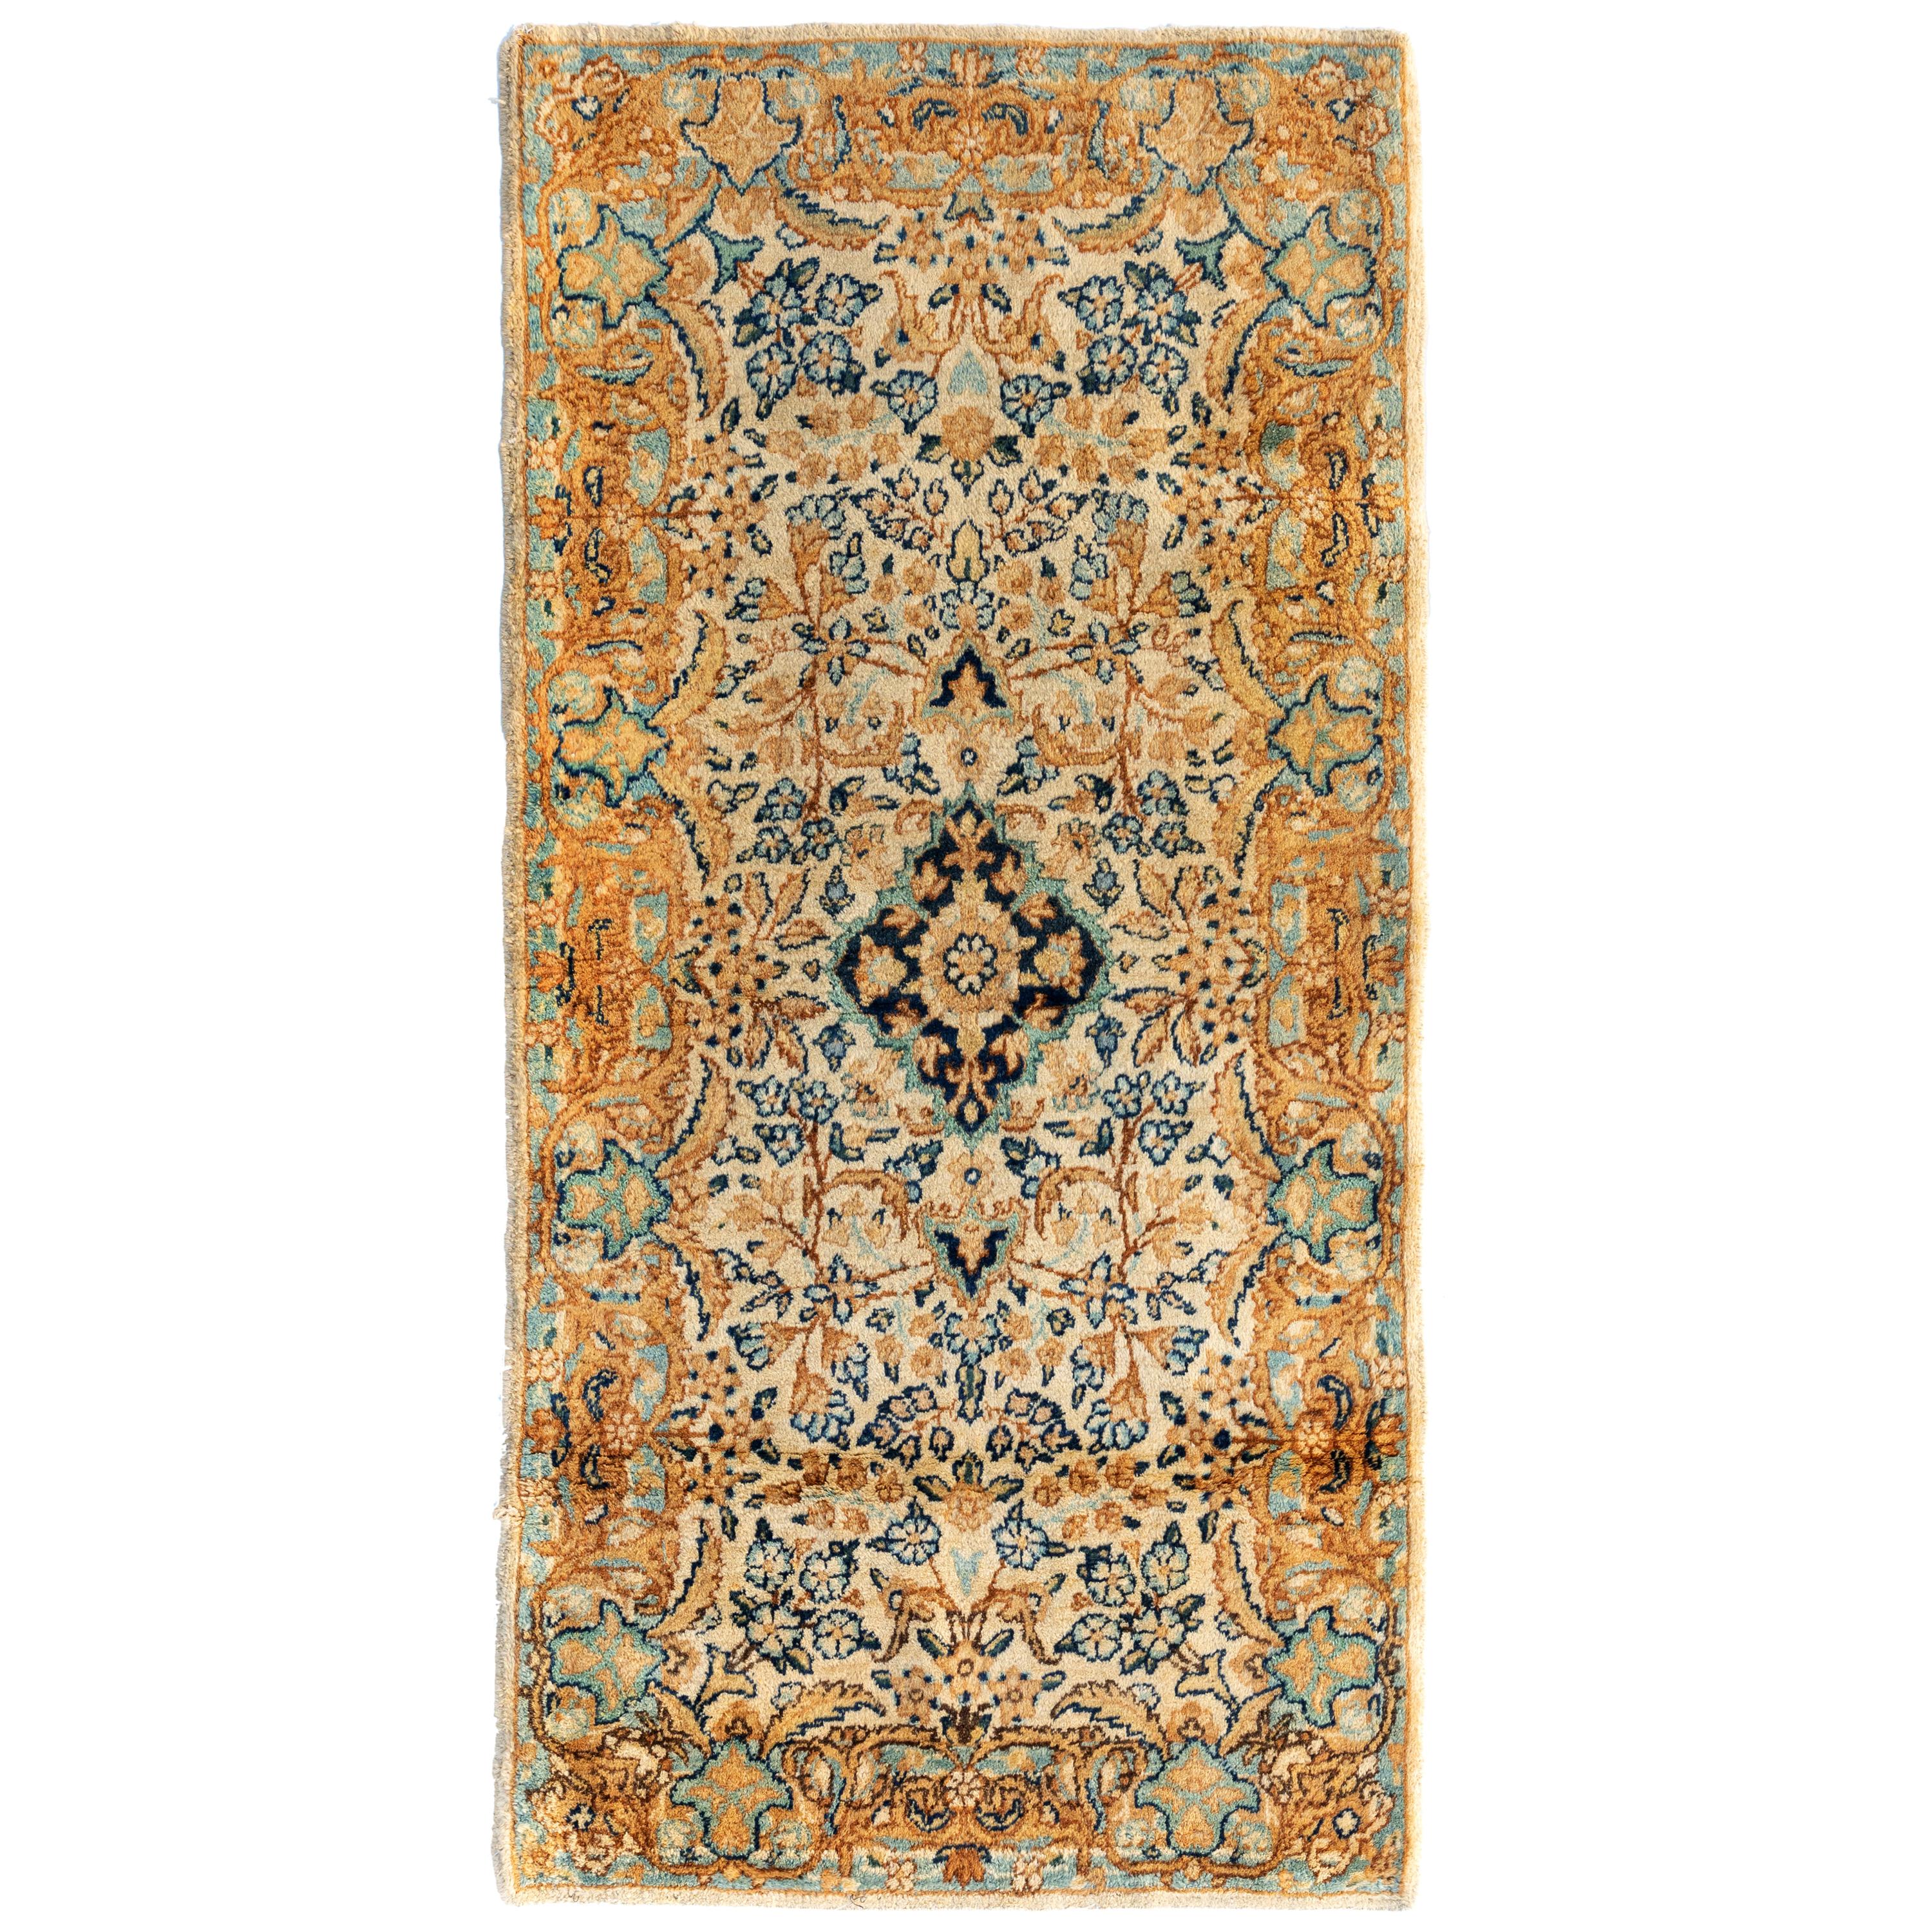 Antiker antiker persischer Kirman-Teppich im Vintage-Stil in Elfenbein, Gold und Blau mit Blumenmuster, um 1930